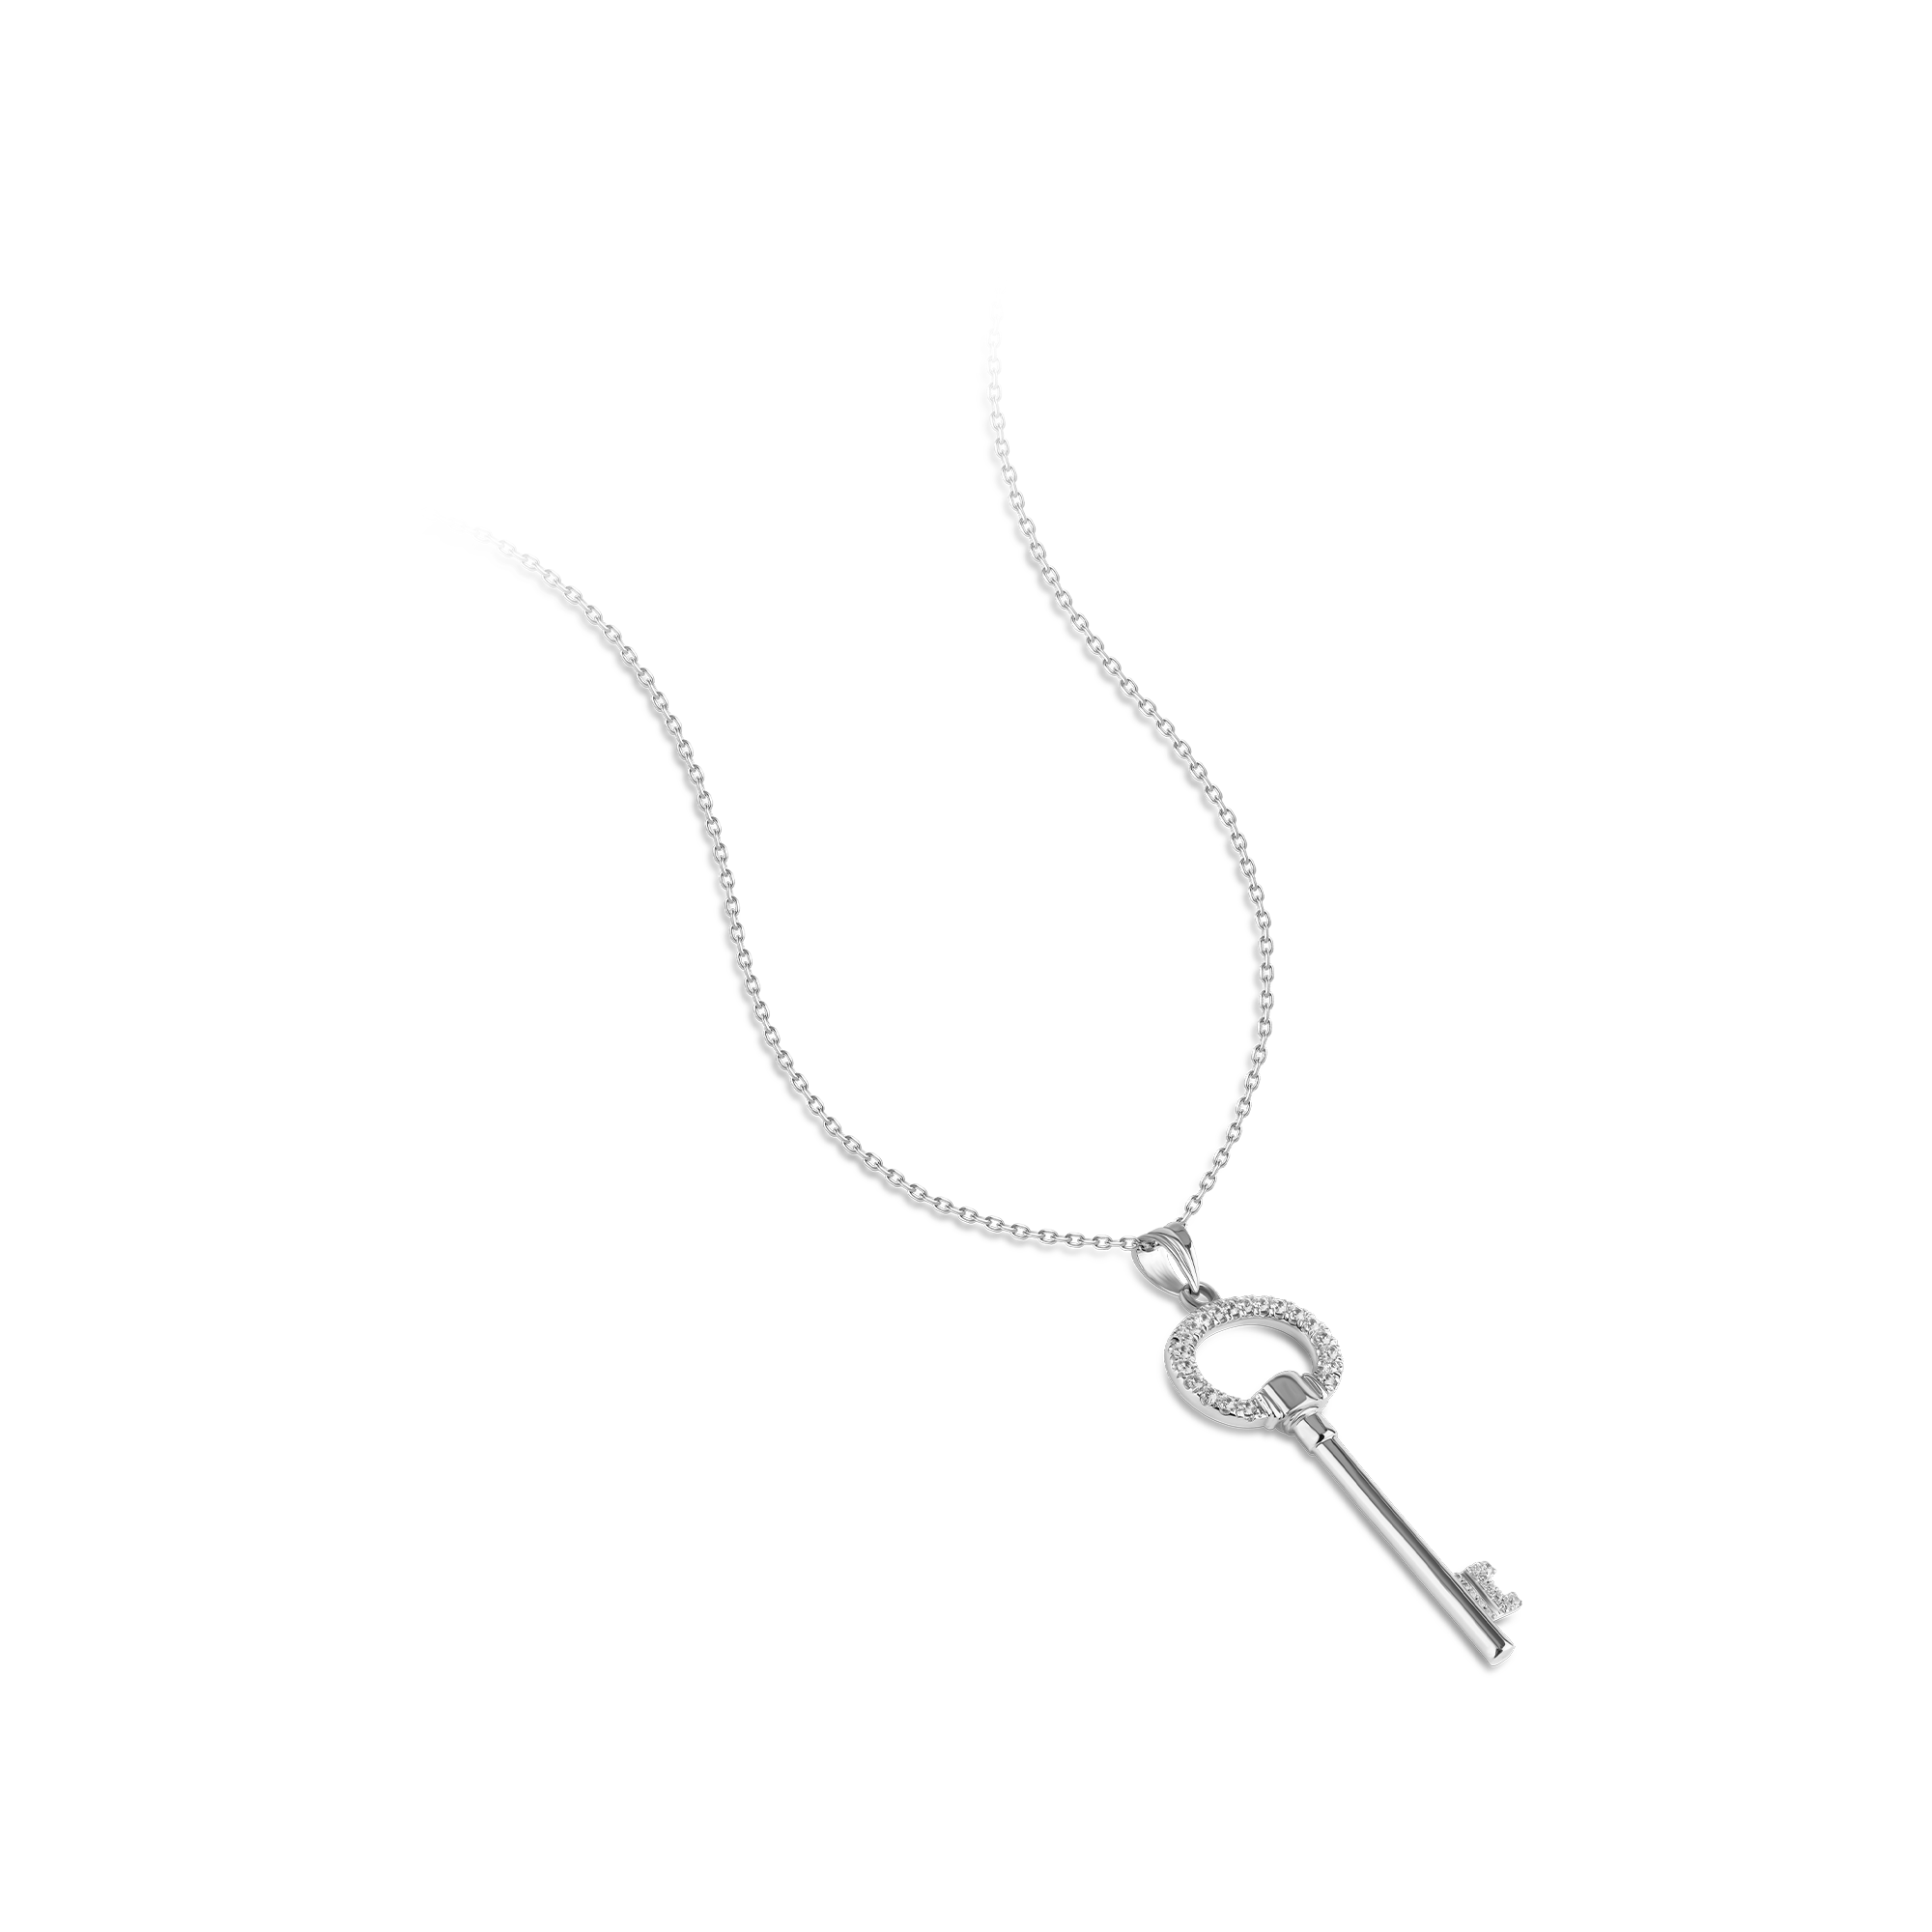 silver key pendant